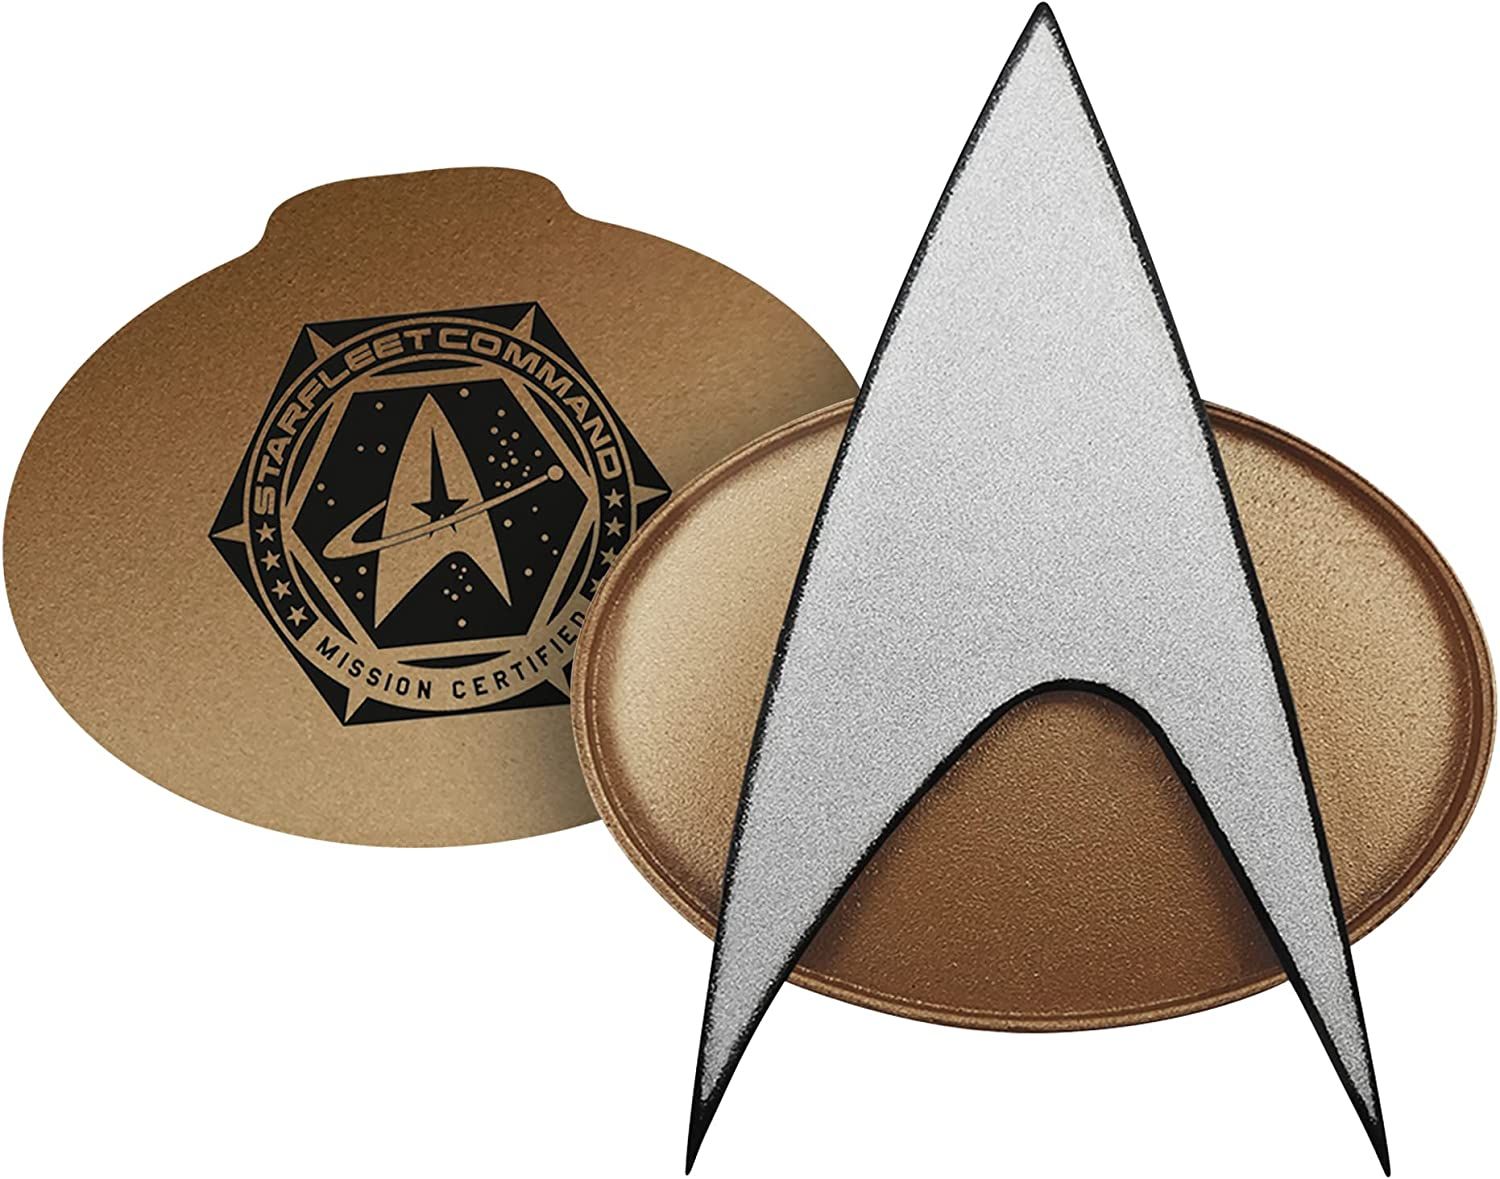 Fametek Star Trek Bluetooth Badge es uno de los mejores accesorios para los fanáticos de Star Trek